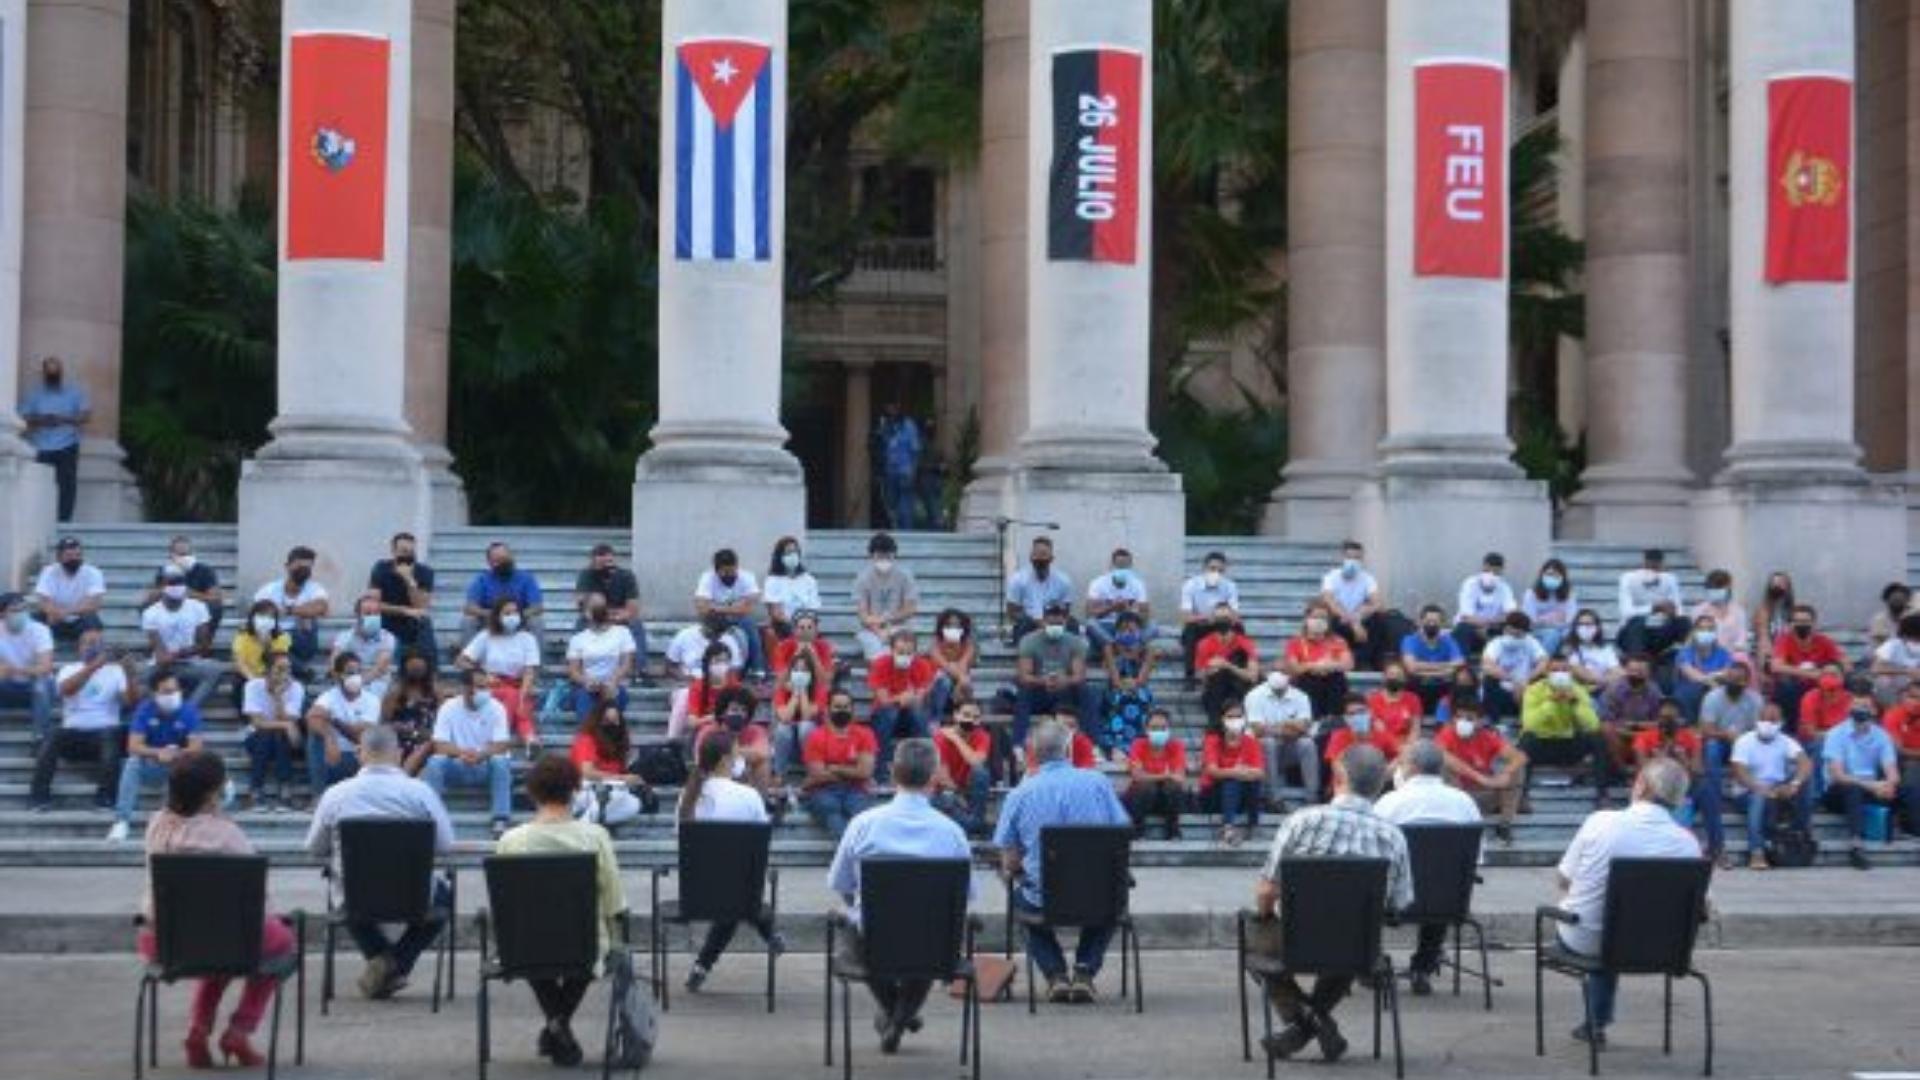 Canel y otros dirigentes del gobierno participan en acto político en Universidad de La Habana. Foto: Presidencia Cuba